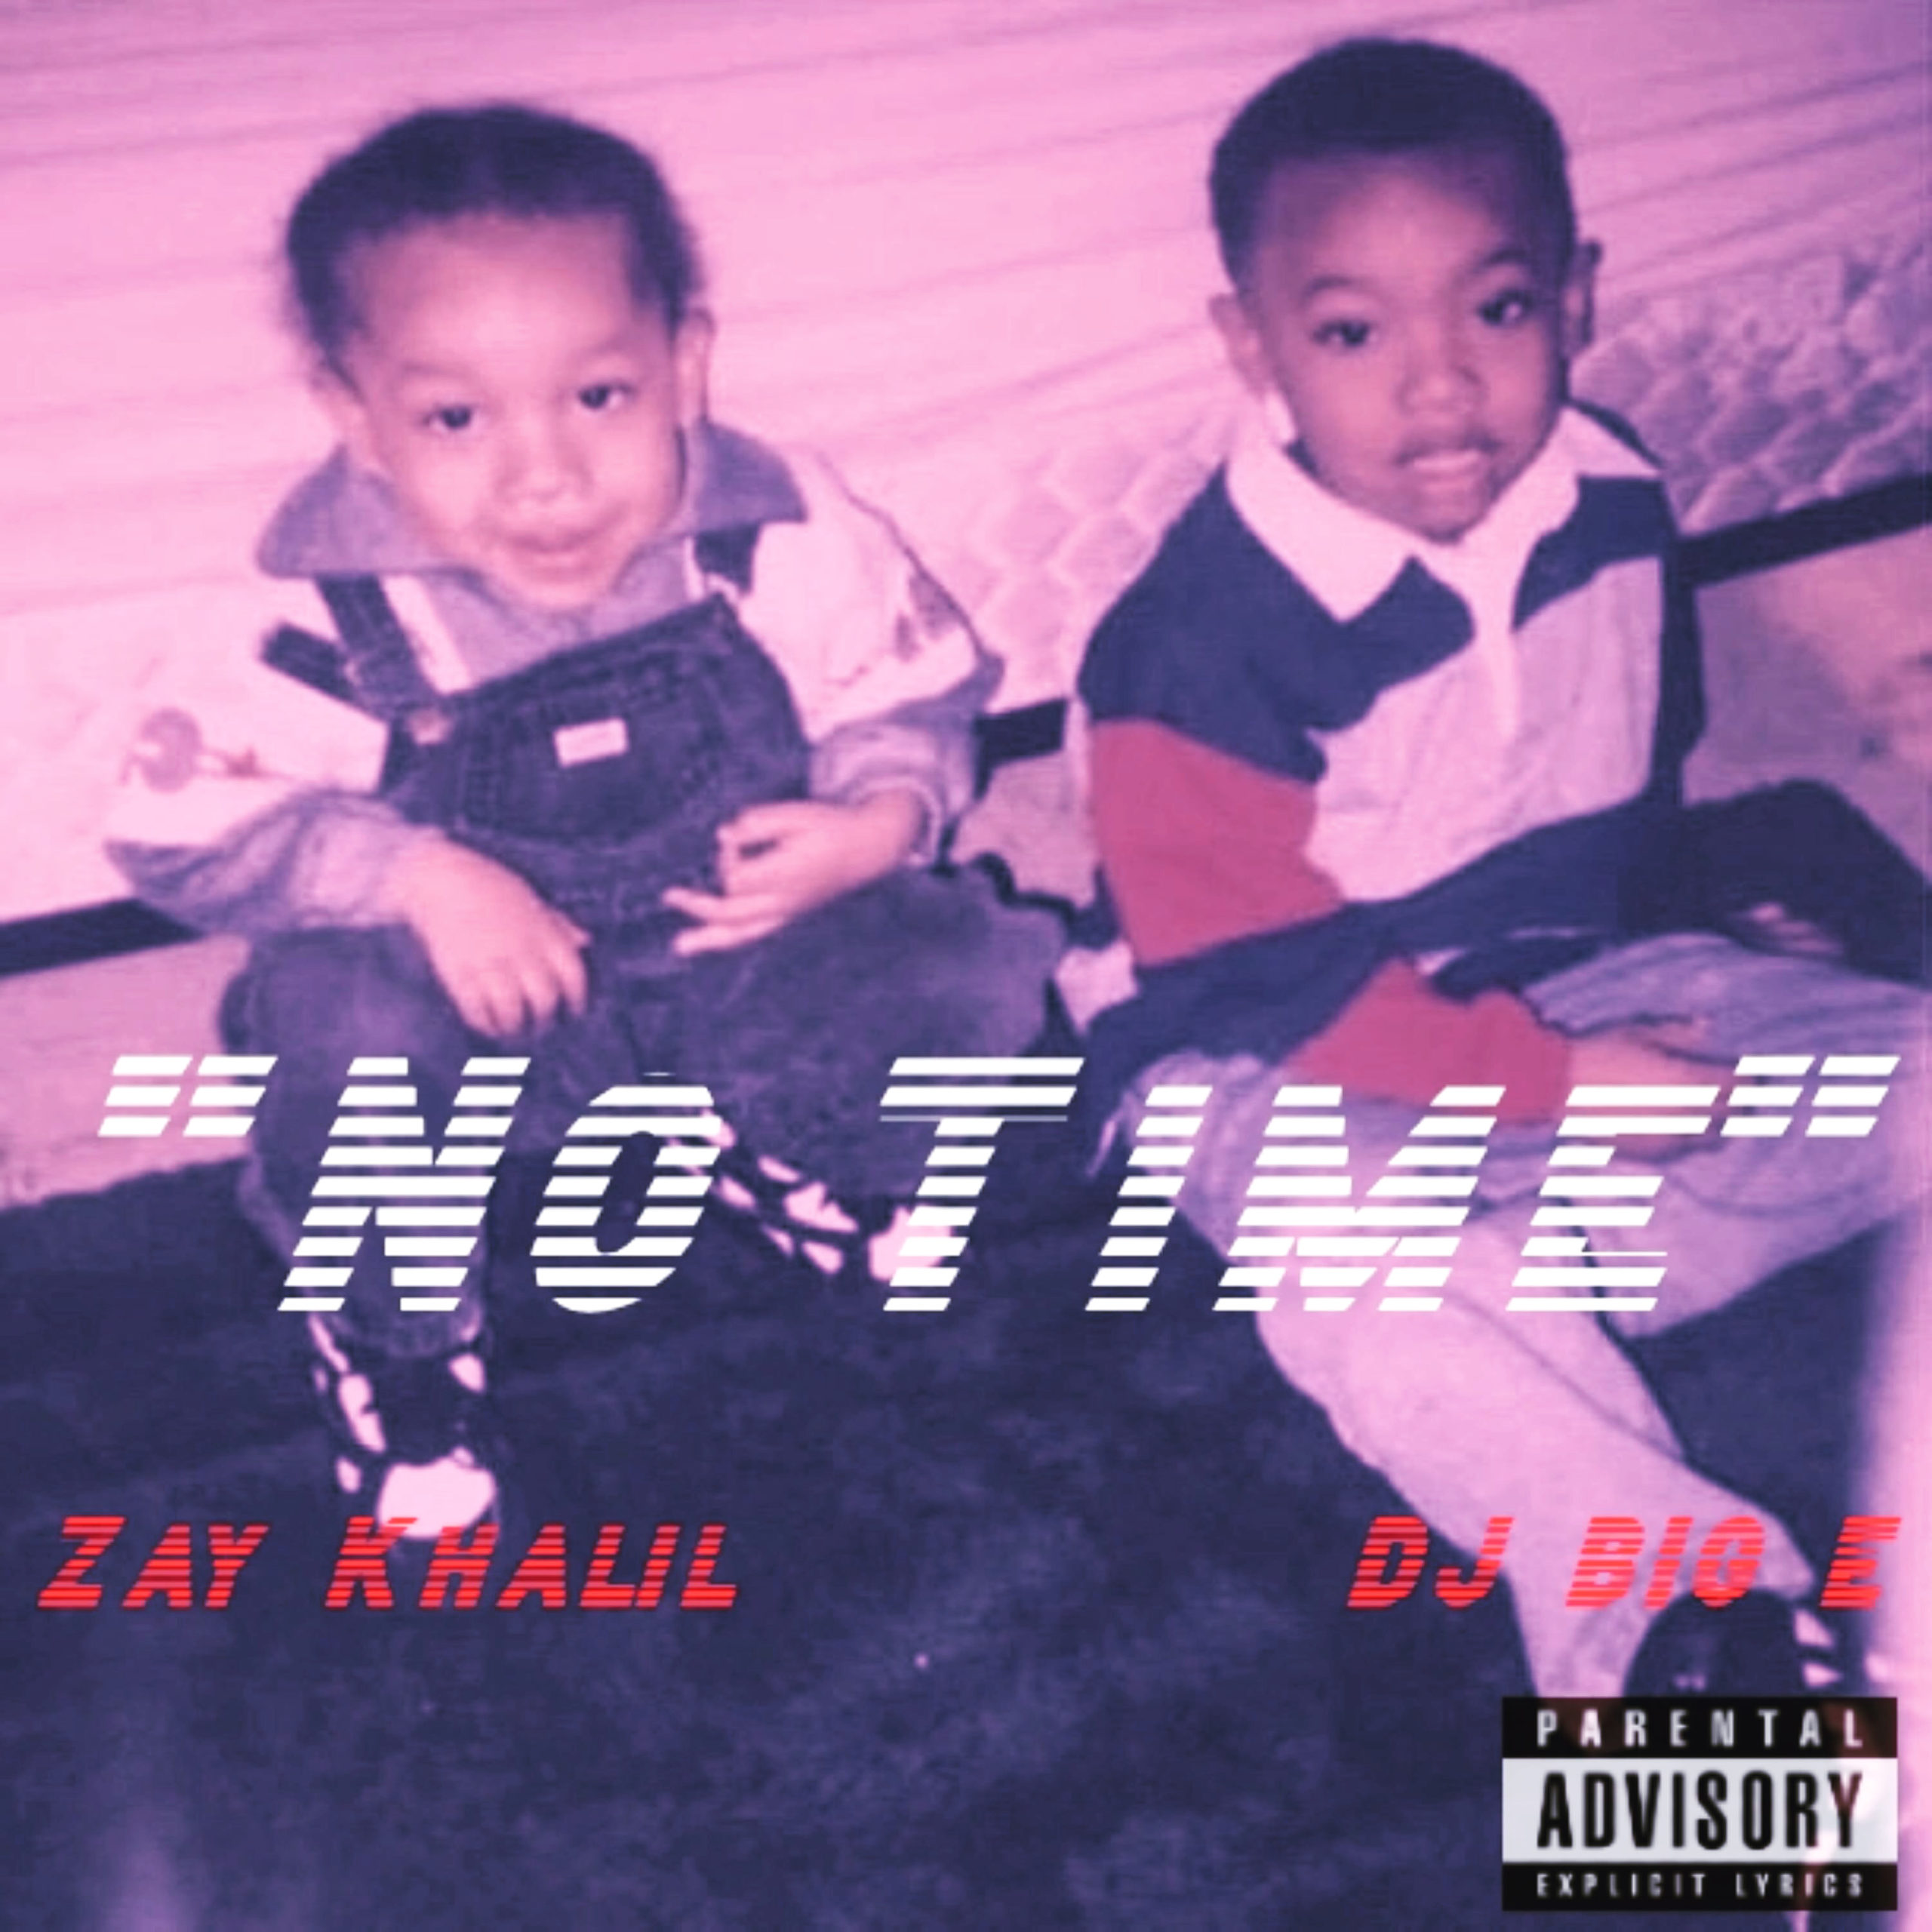 DJ Big E Featuring Zay Khalil – No Time @djbige1234